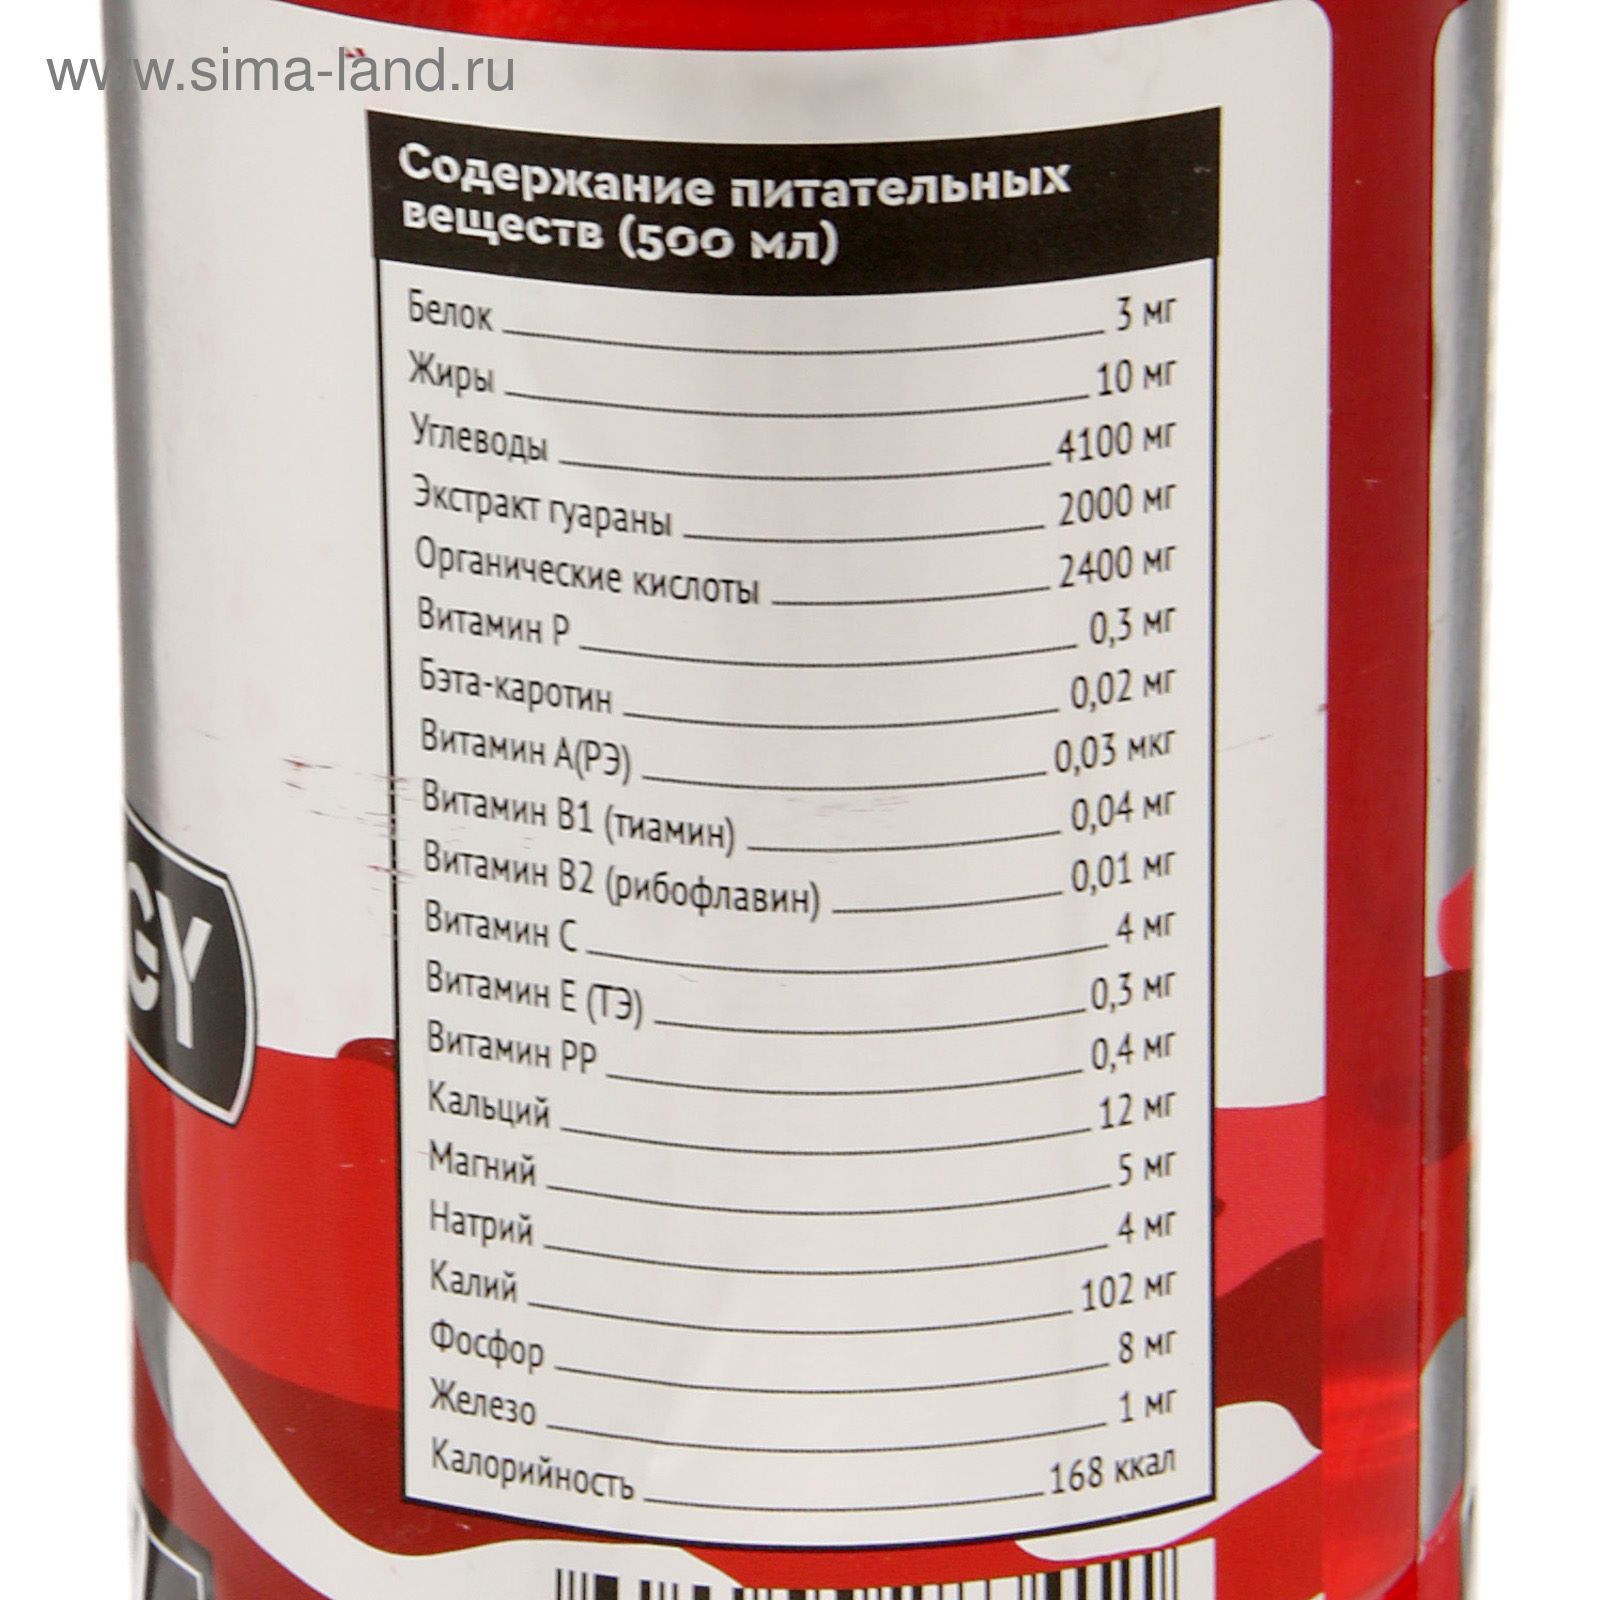 Напиток SportLine Red Energy 2000mg 500ml (Барбарис)